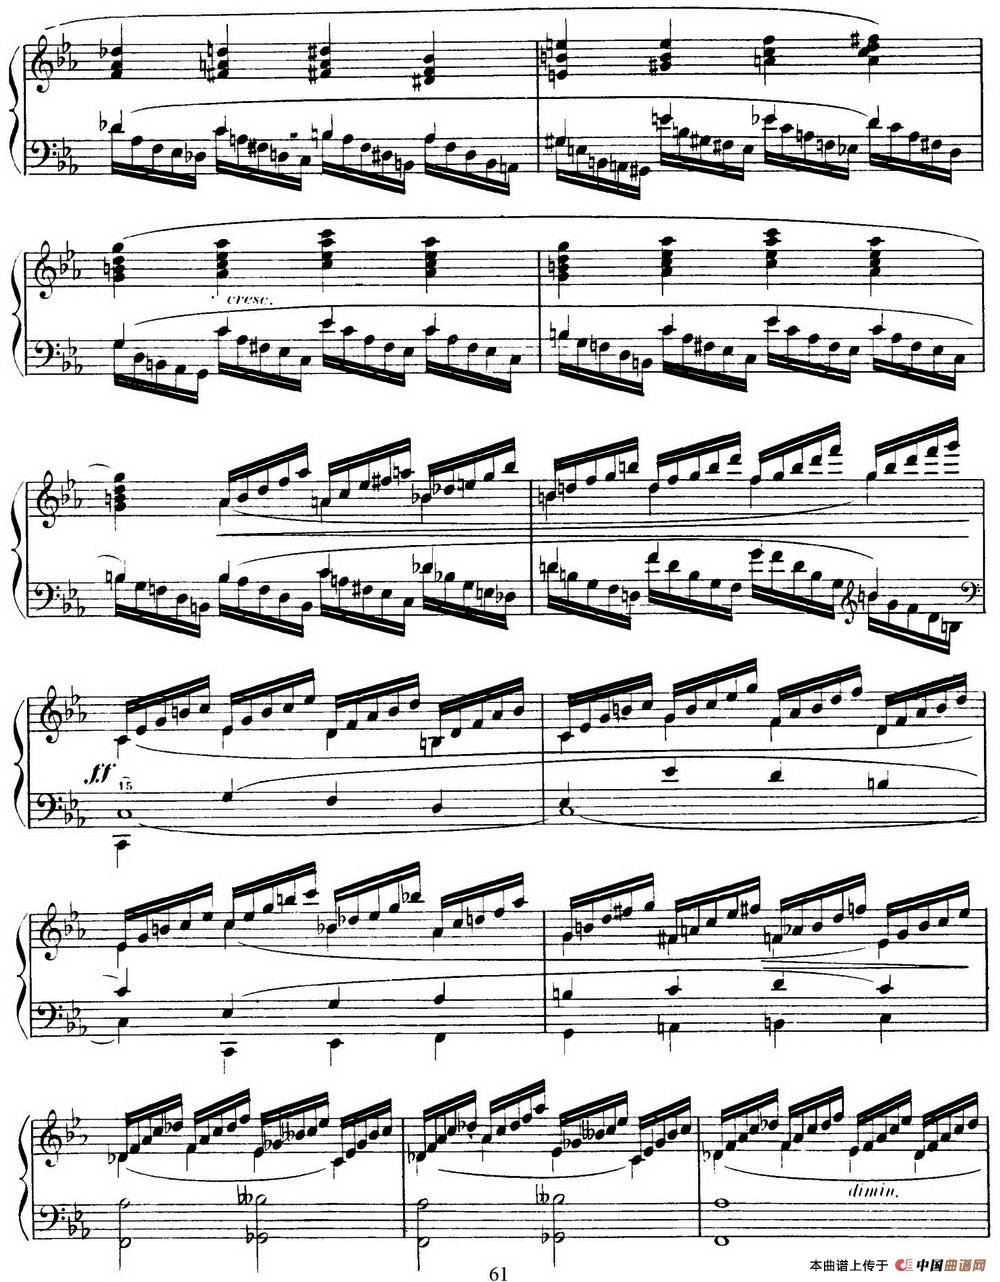 15 Etudes de Virtuosité Op.72 No.14（十五首钢琴练习曲之十四）(1)_061.jpg